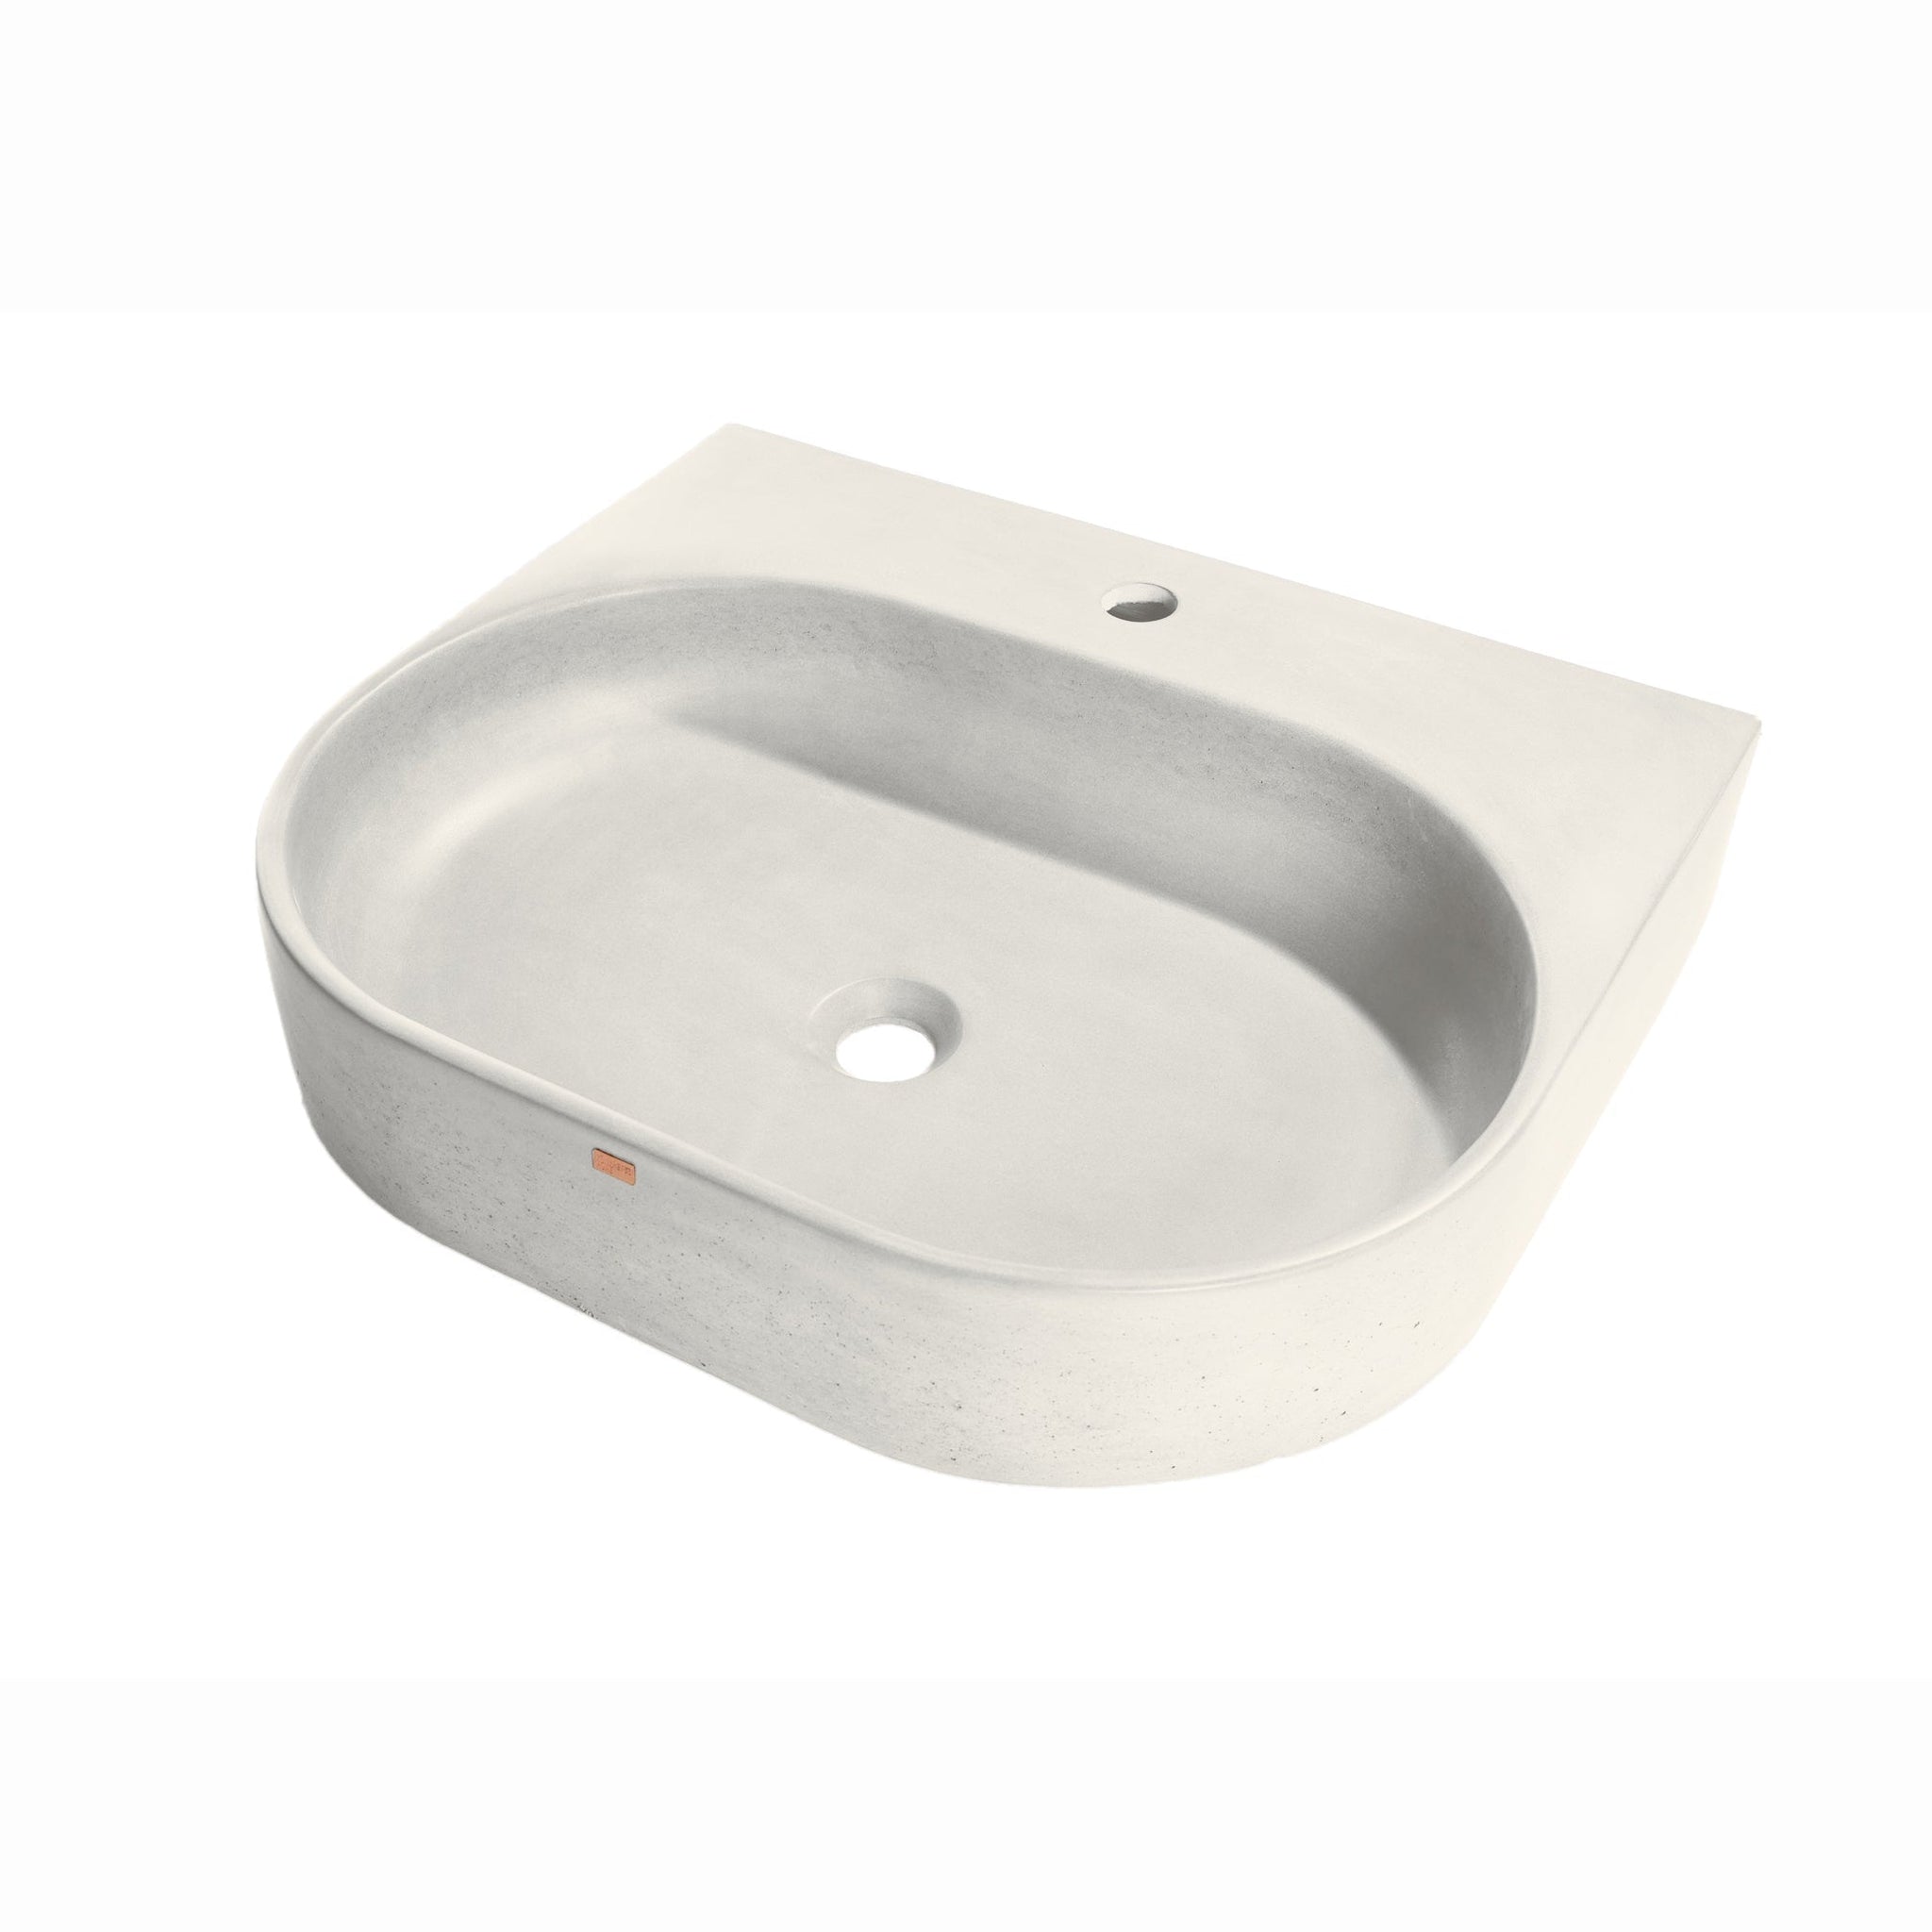 Konkretus, Konkretus Bahia02 22" Shadow Gray Wall-Mounted Vessel Concrete Bathroom Sink